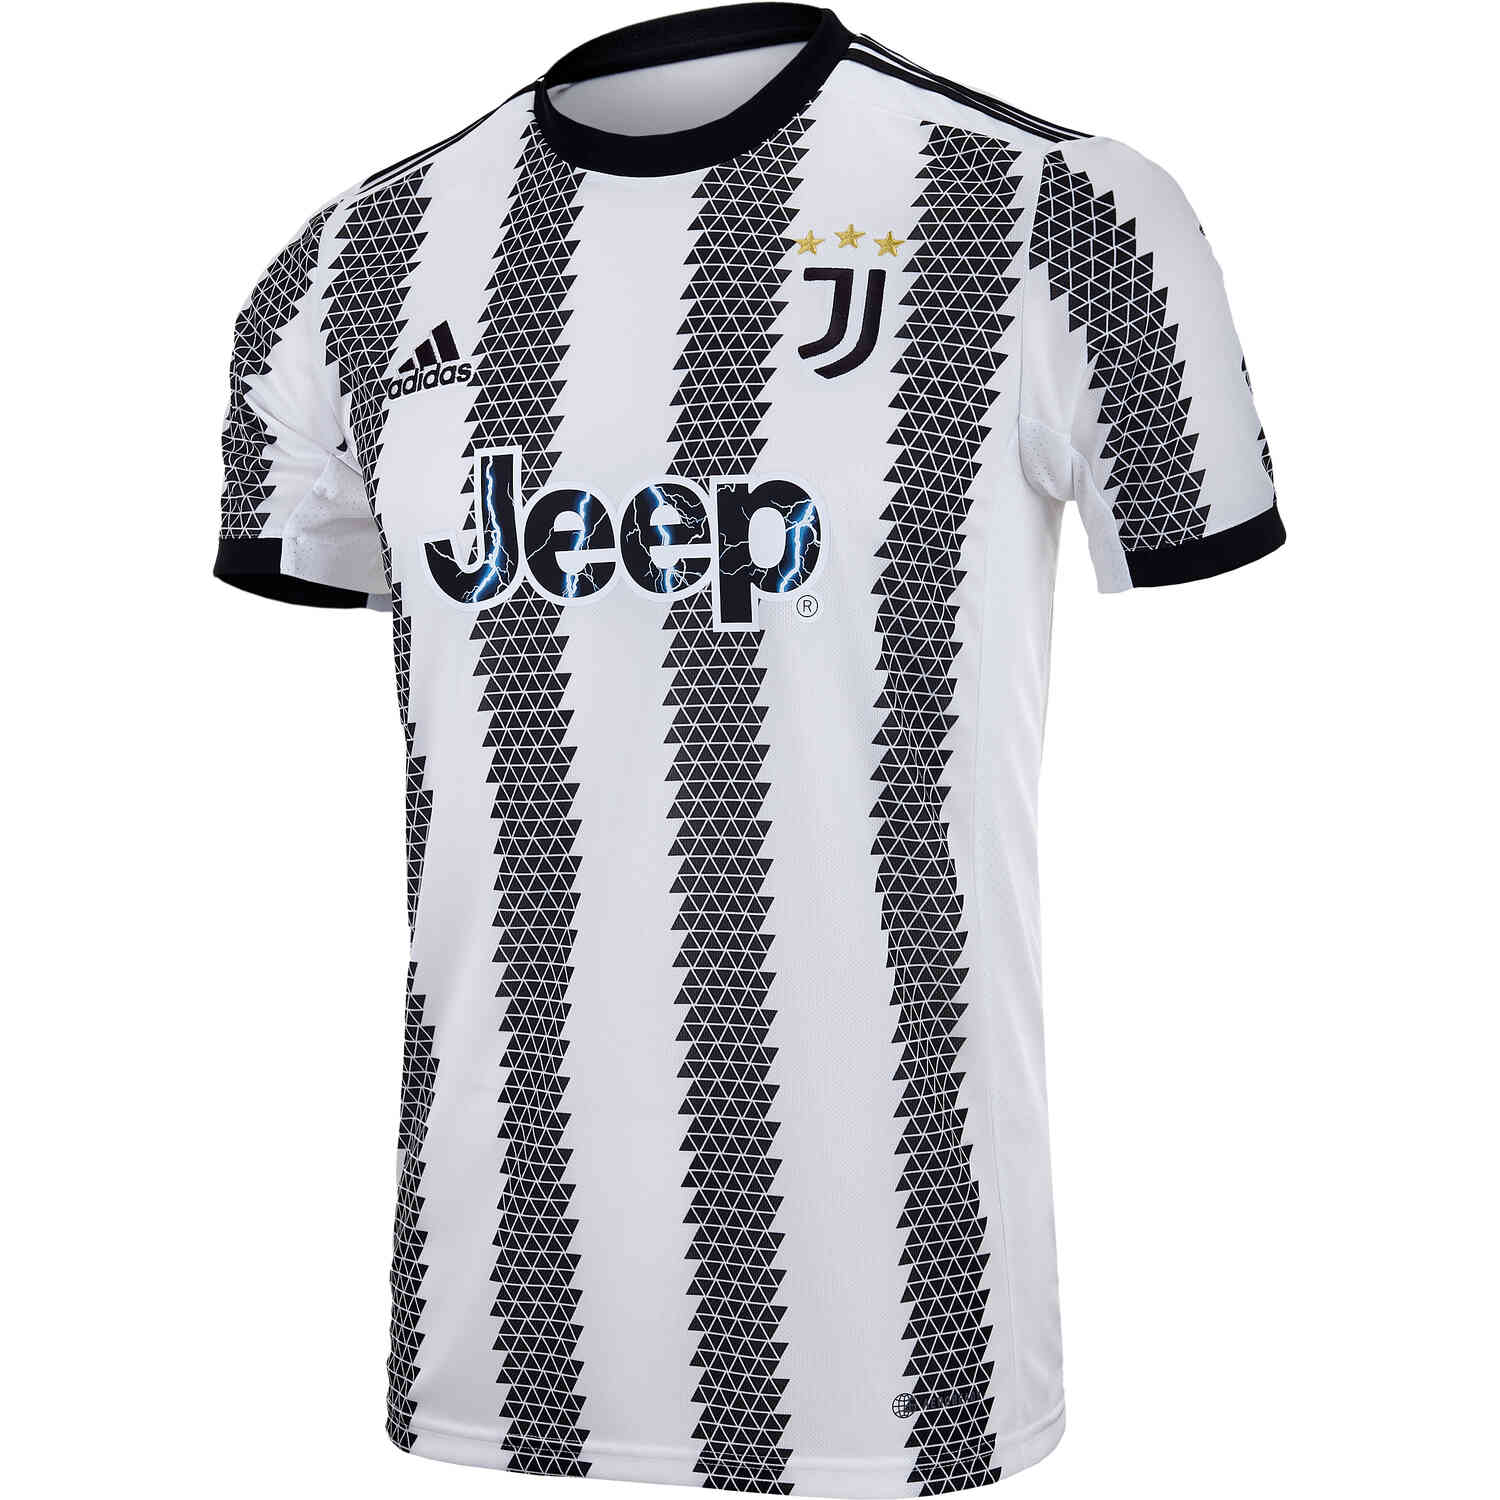 2022/23 adidas Juventus Home Jersey - SoccerPro